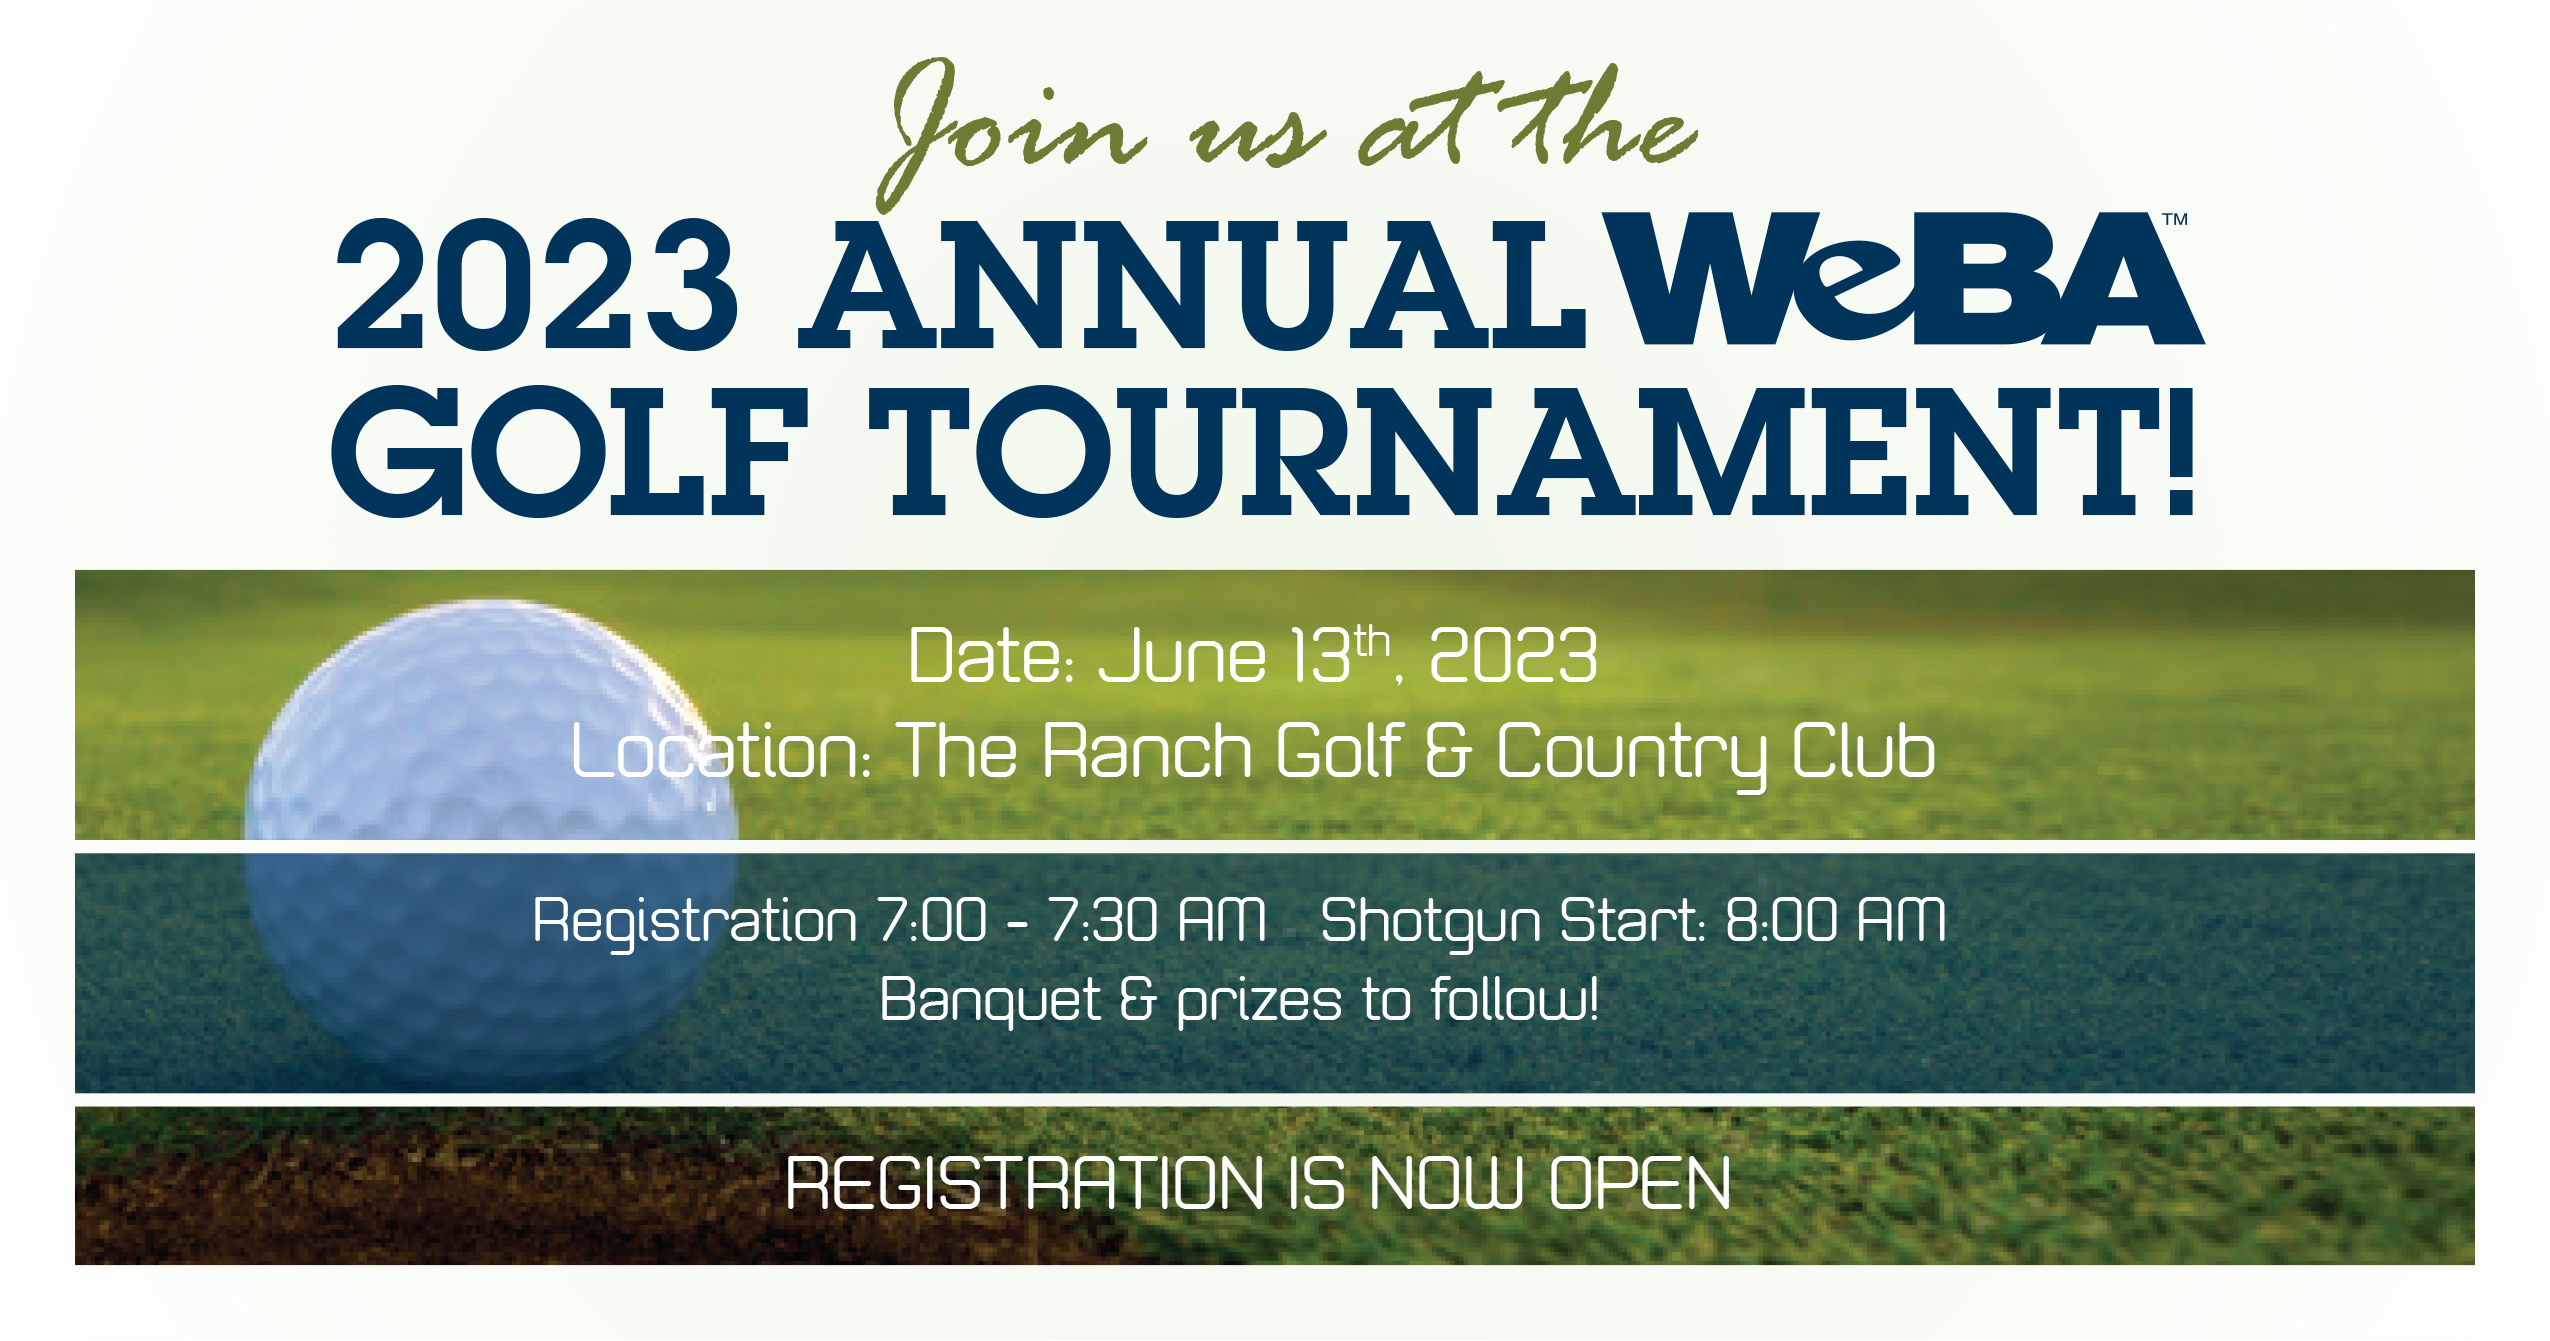 WeBA-Golf-Tournament-2023-web-banner-Now-Open